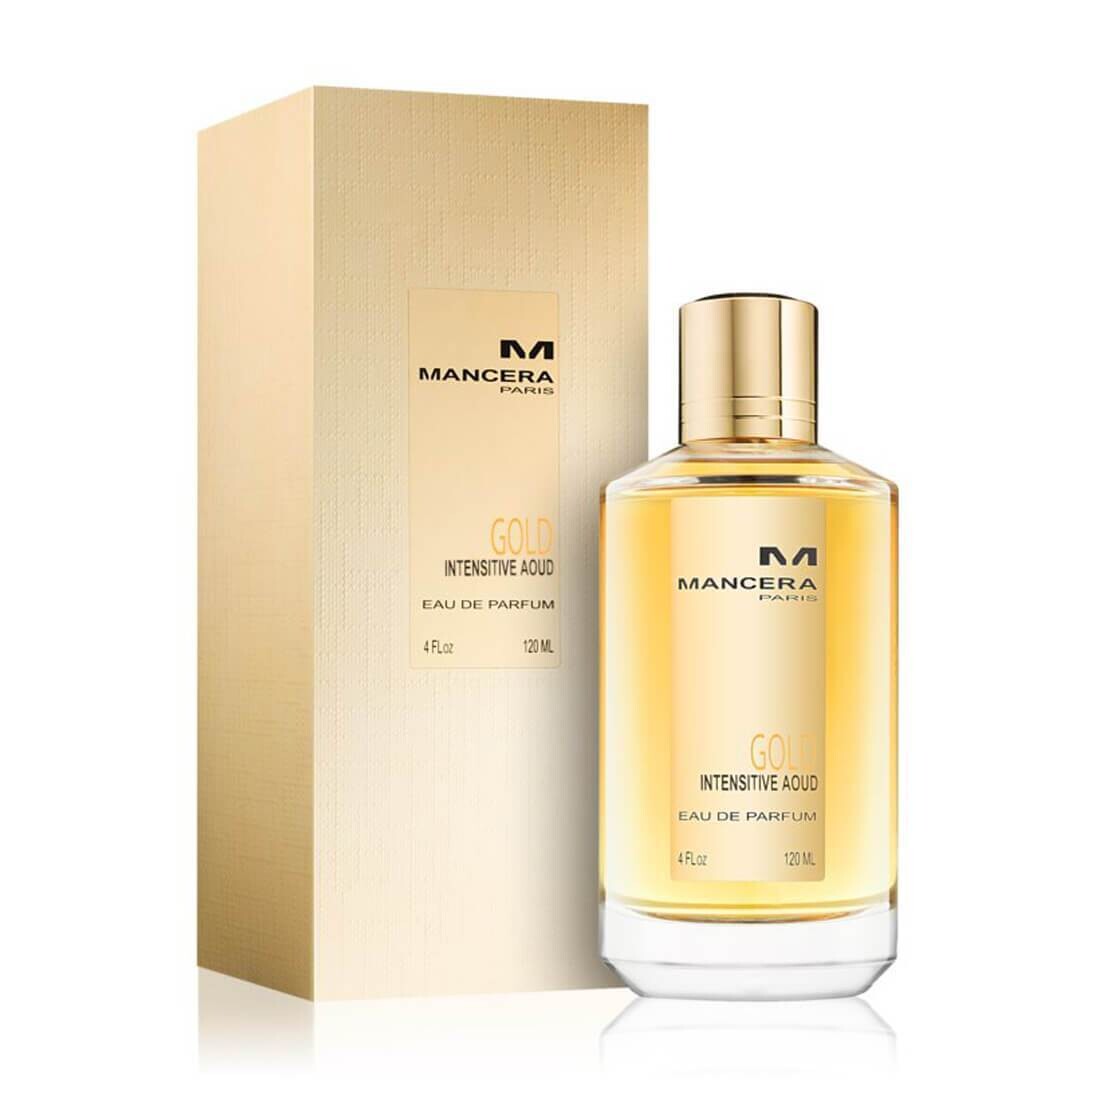 Mancera Gold Intensive Aoud Eau De Perfume For Unisex – 120ml